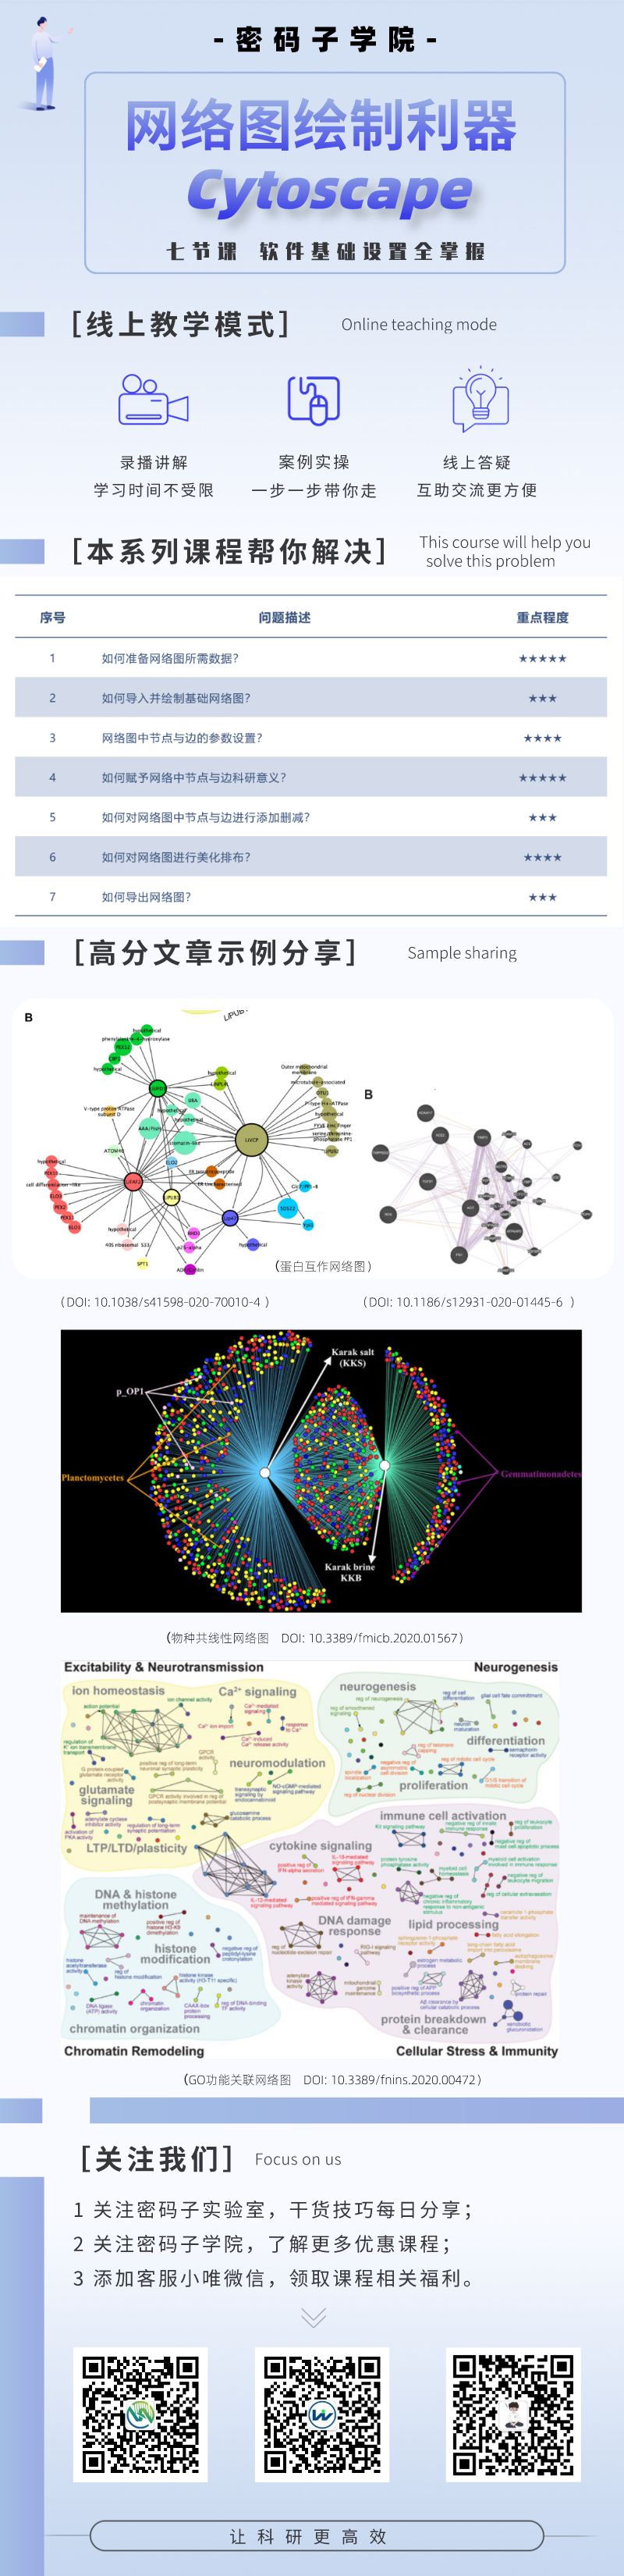 【课程】网络图绘制利器-Cytoscape(图1)